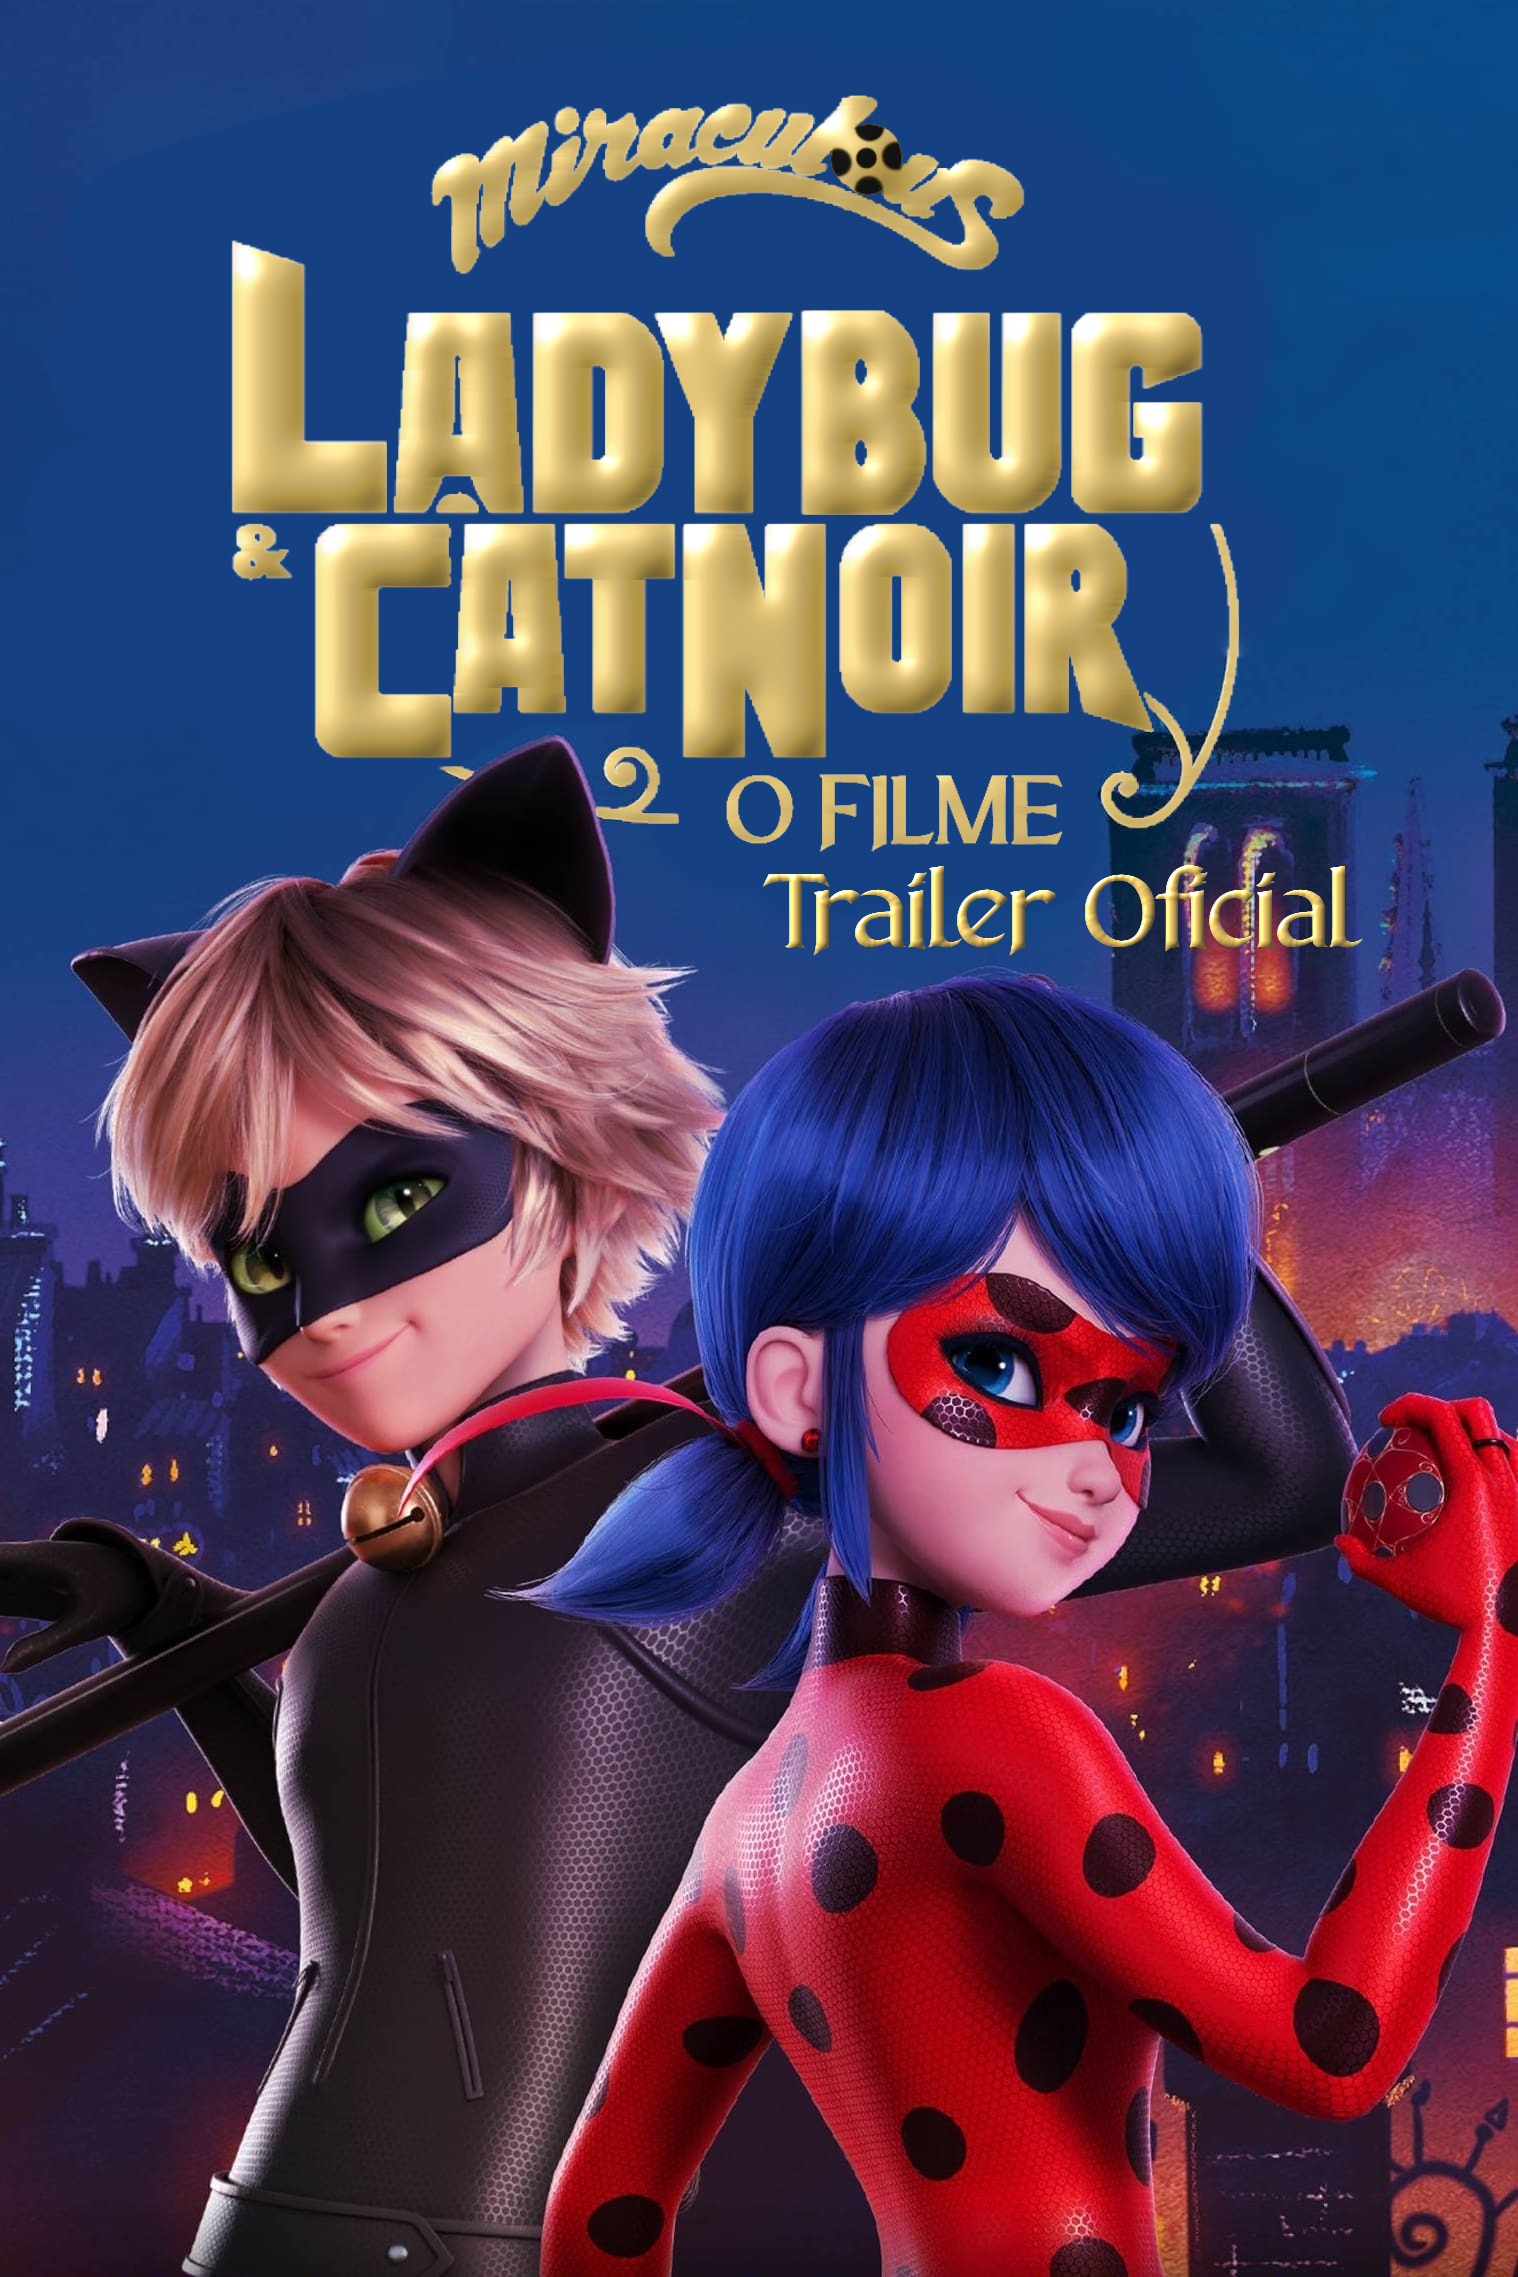 Trailer - Miraculous: As Aventuras de Ladybug 